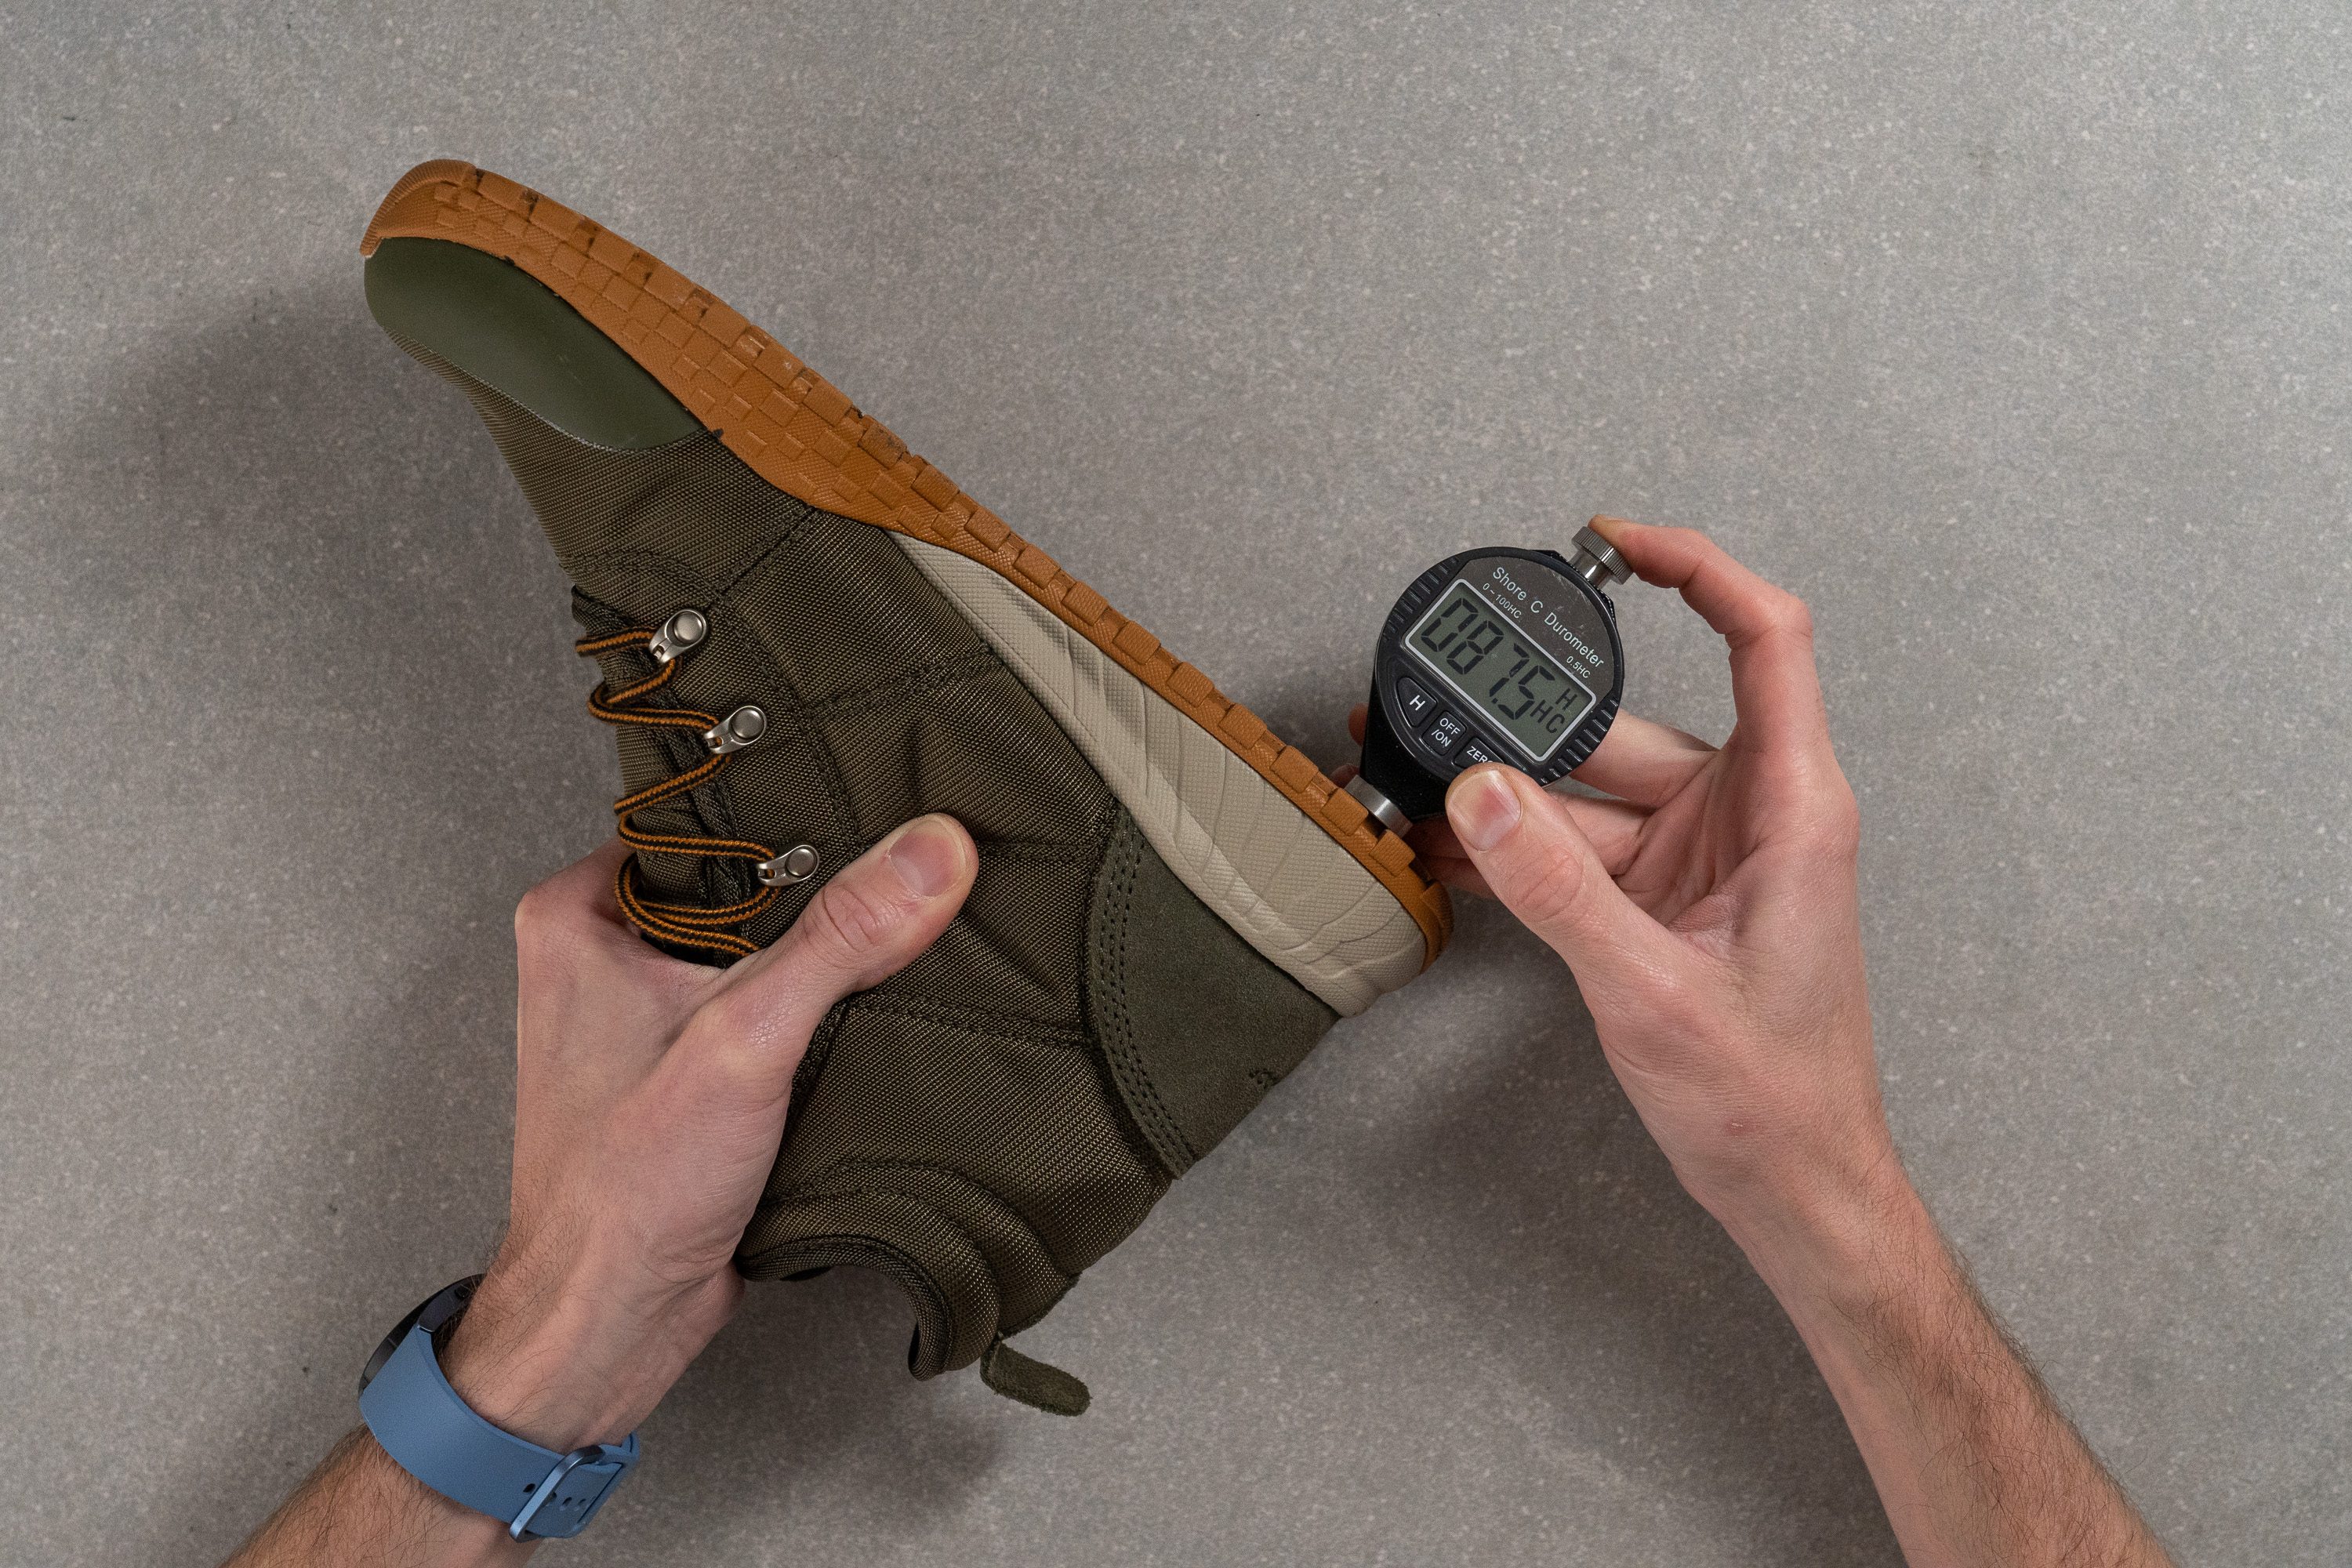 Columbia zapatillas de running Adidas hombre pista talla 33.5 Outsole hardness